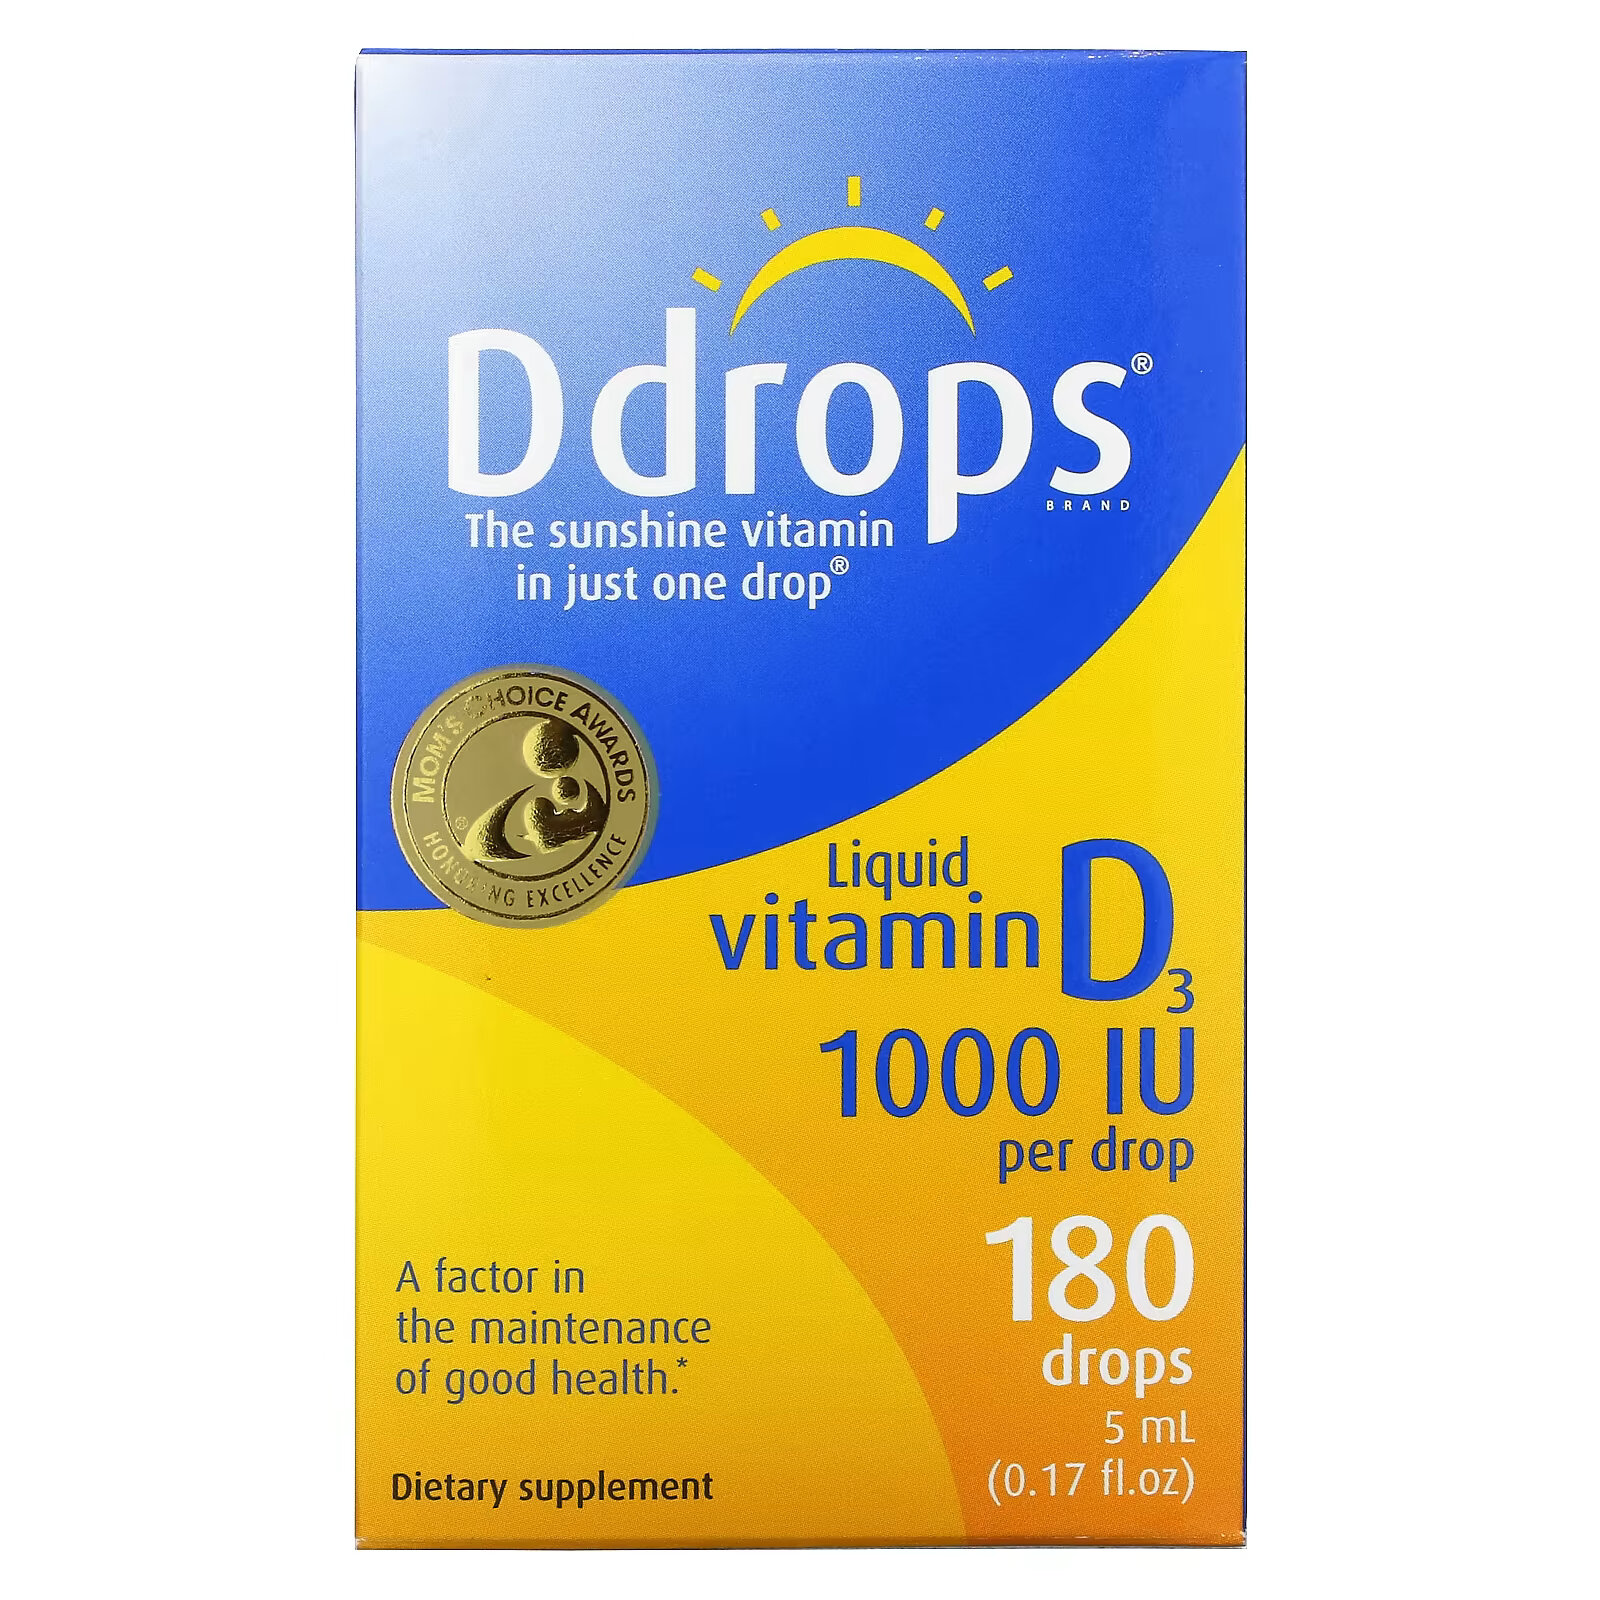 ddrops жидкий витамин d3 для детей 400 ме 90 капель 2 5 мл 0 08 мл Ddrops, Жидкий витамин D3, 1000 МЕ, 0,17 жидких унций (5 мл)